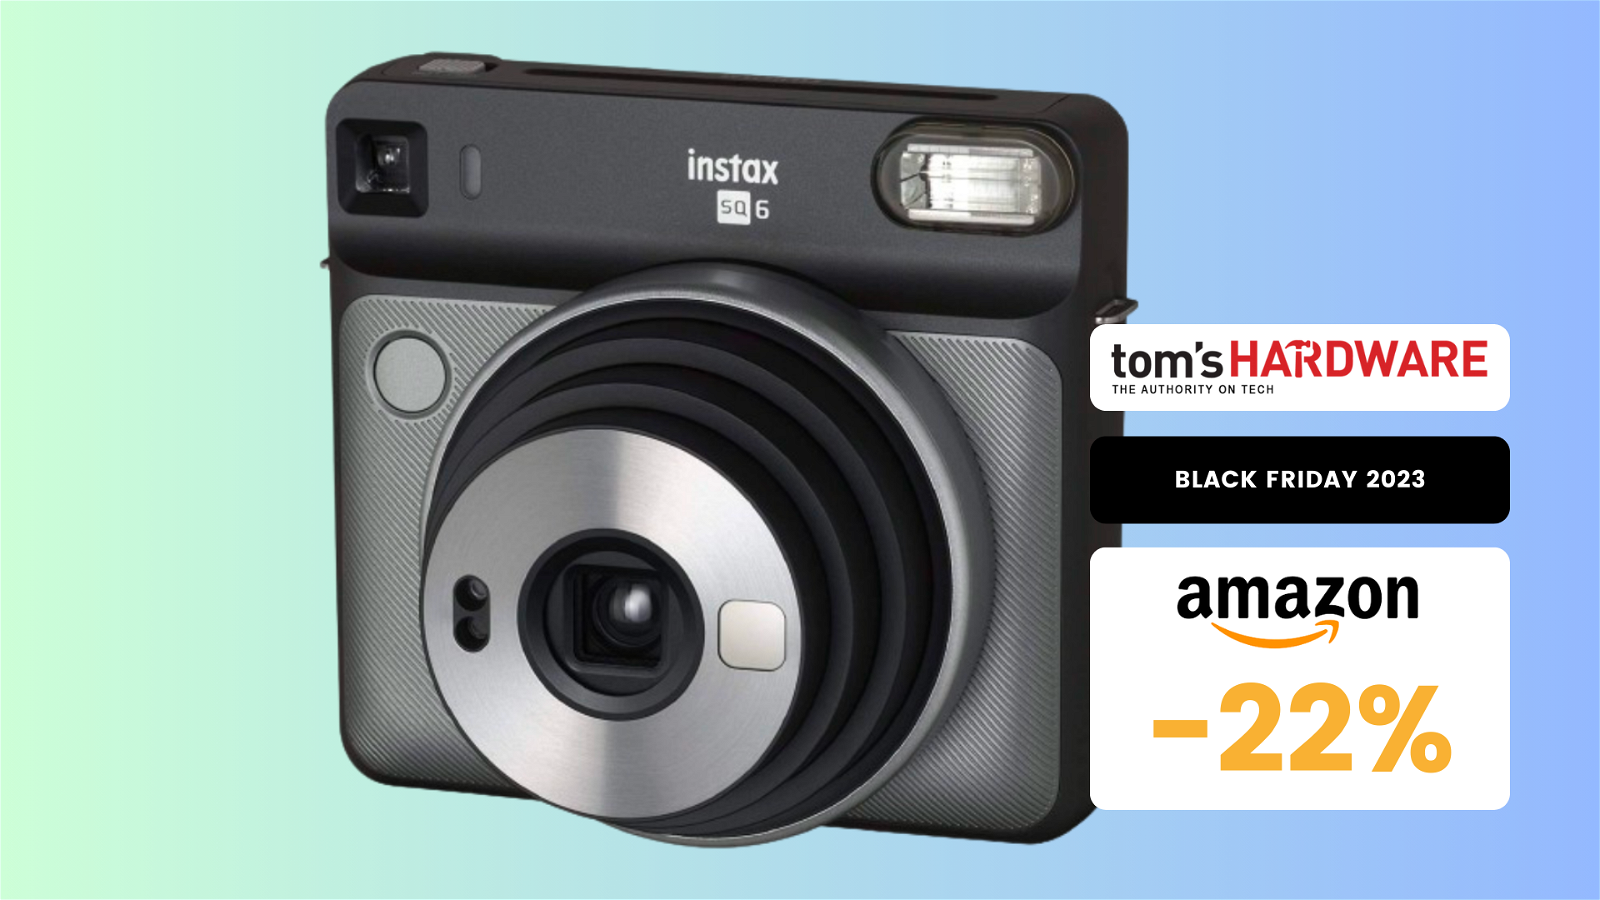 Immagine di Questa stupenda fotocamera istantanea Fujifilm è un AFFARE! Costa solo 99€